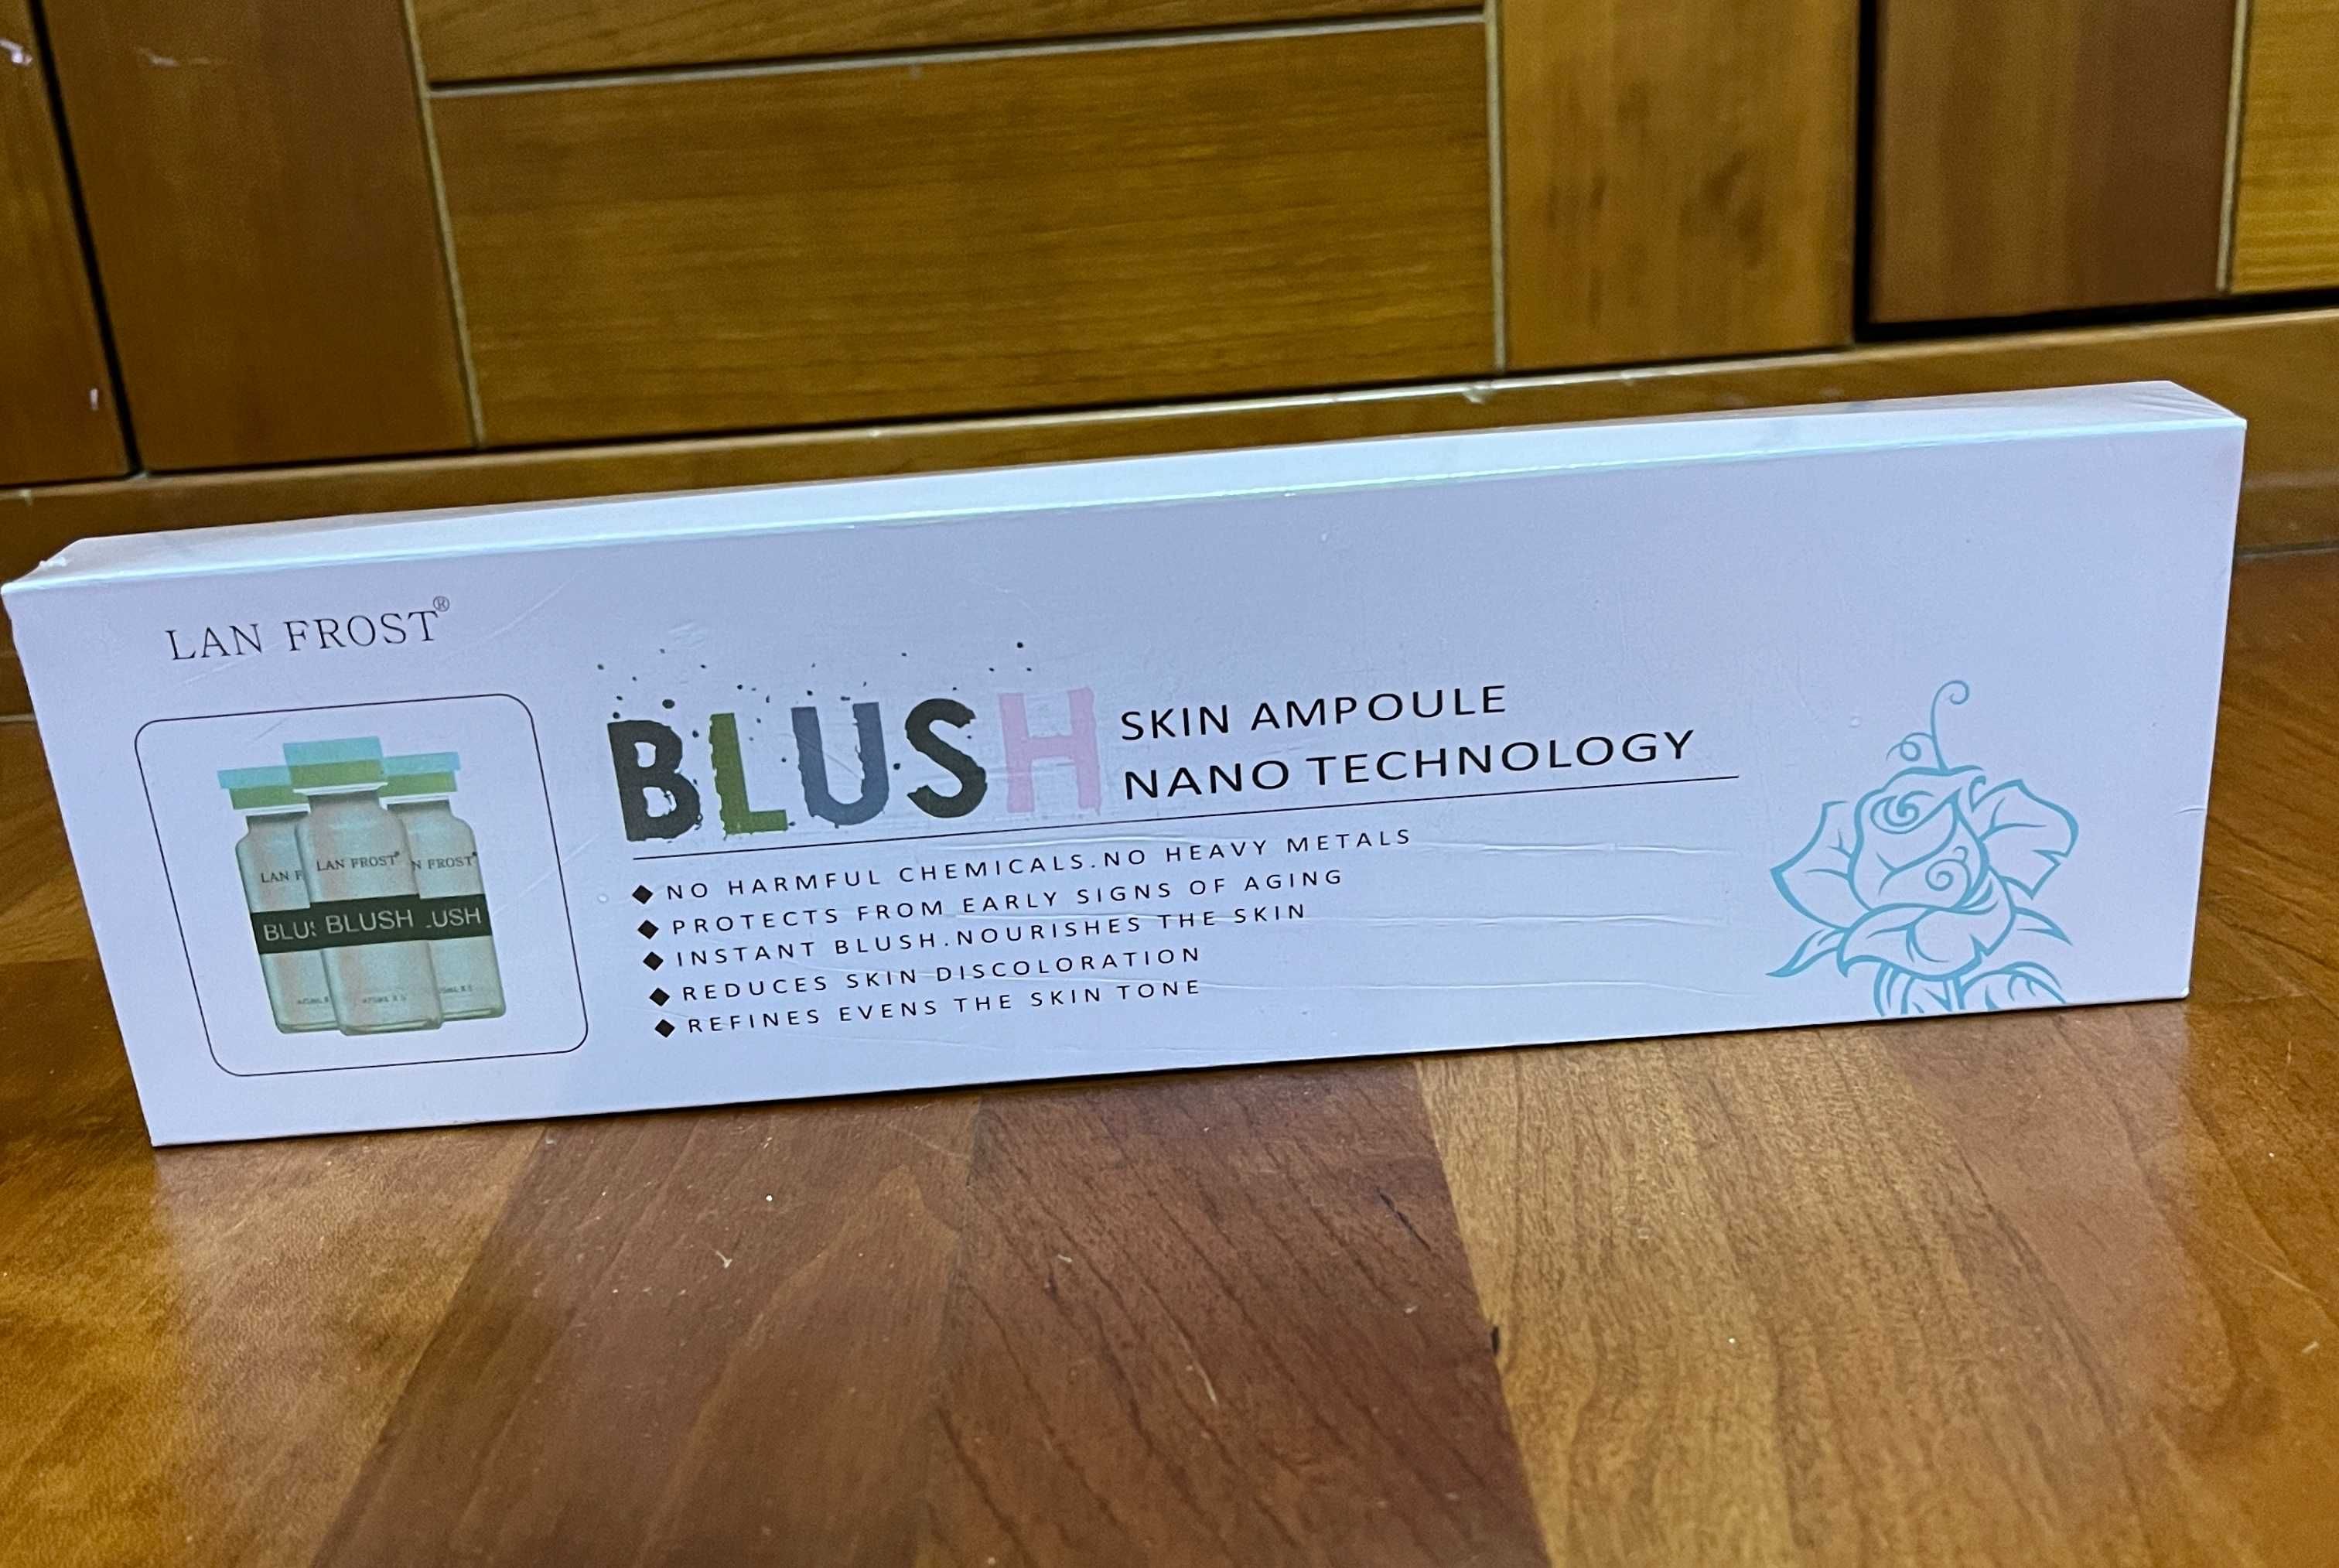 BLUSH-skin ampoule nano technology